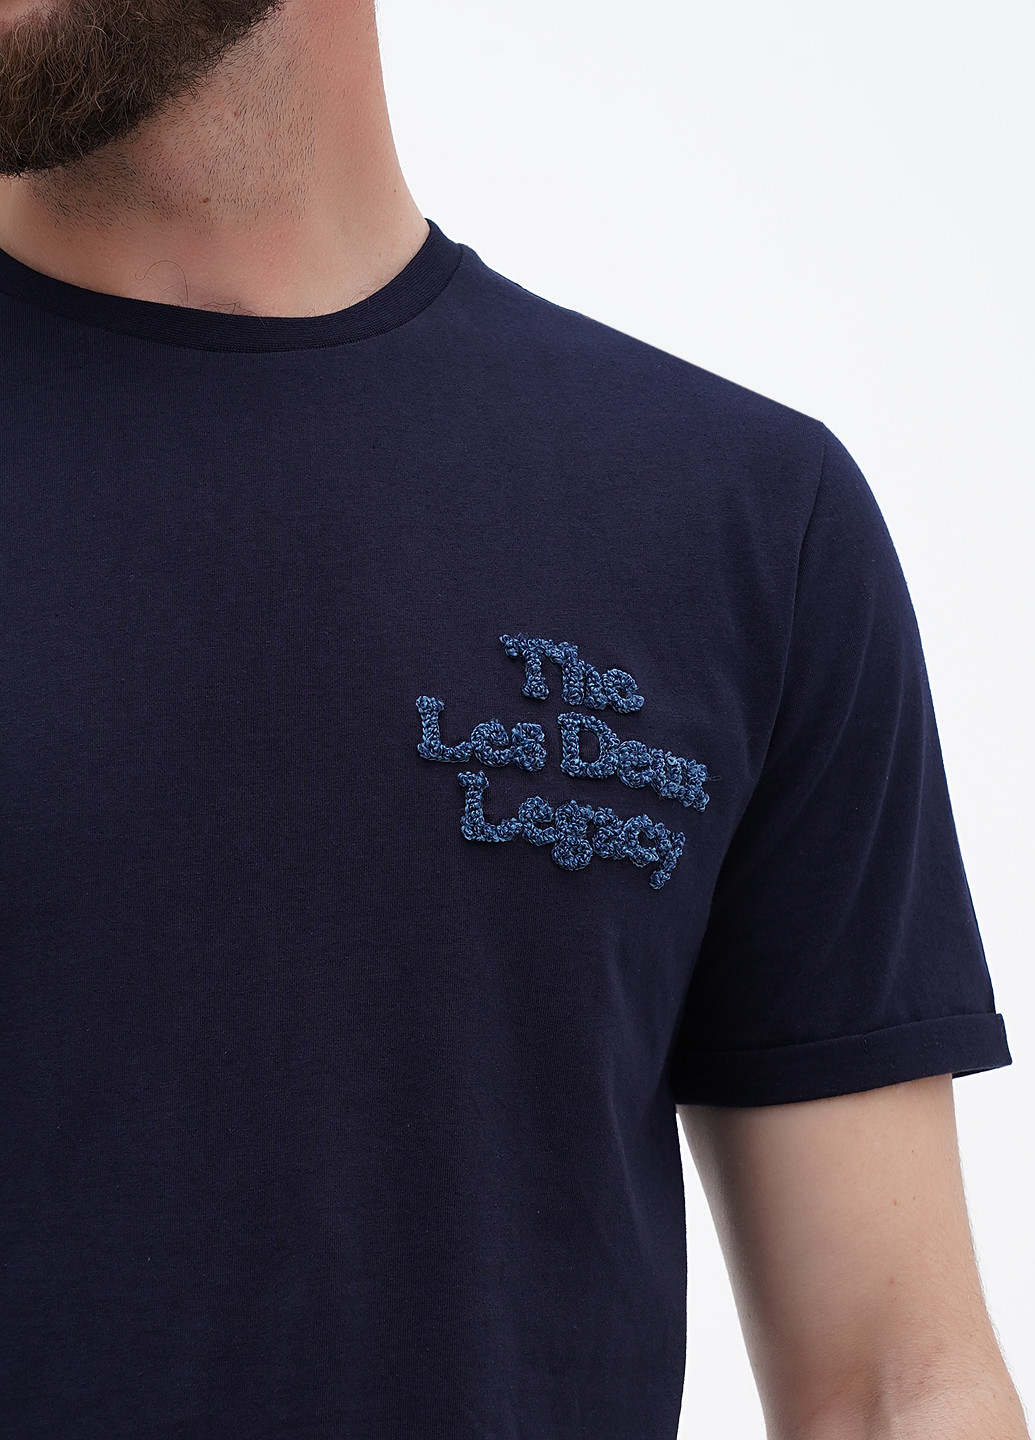 Темно-синяя футболка Les Deux